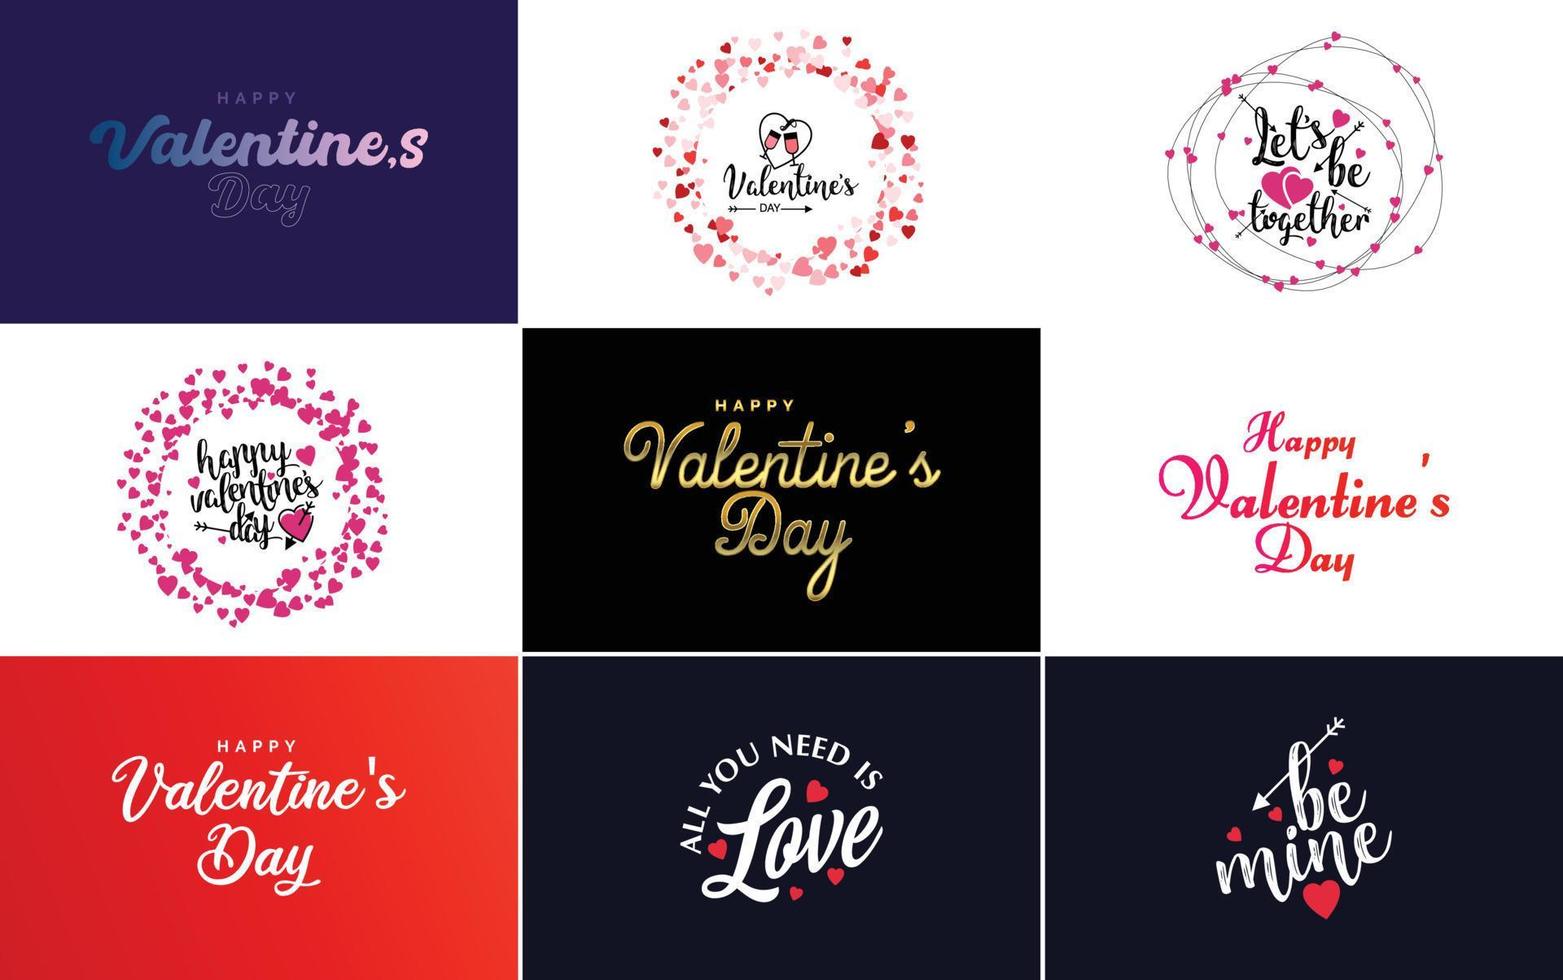 Happy Valentine's Day Grußkartenvorlage mit einem romantischen Thema und einem roten und rosa Farbschema vektor